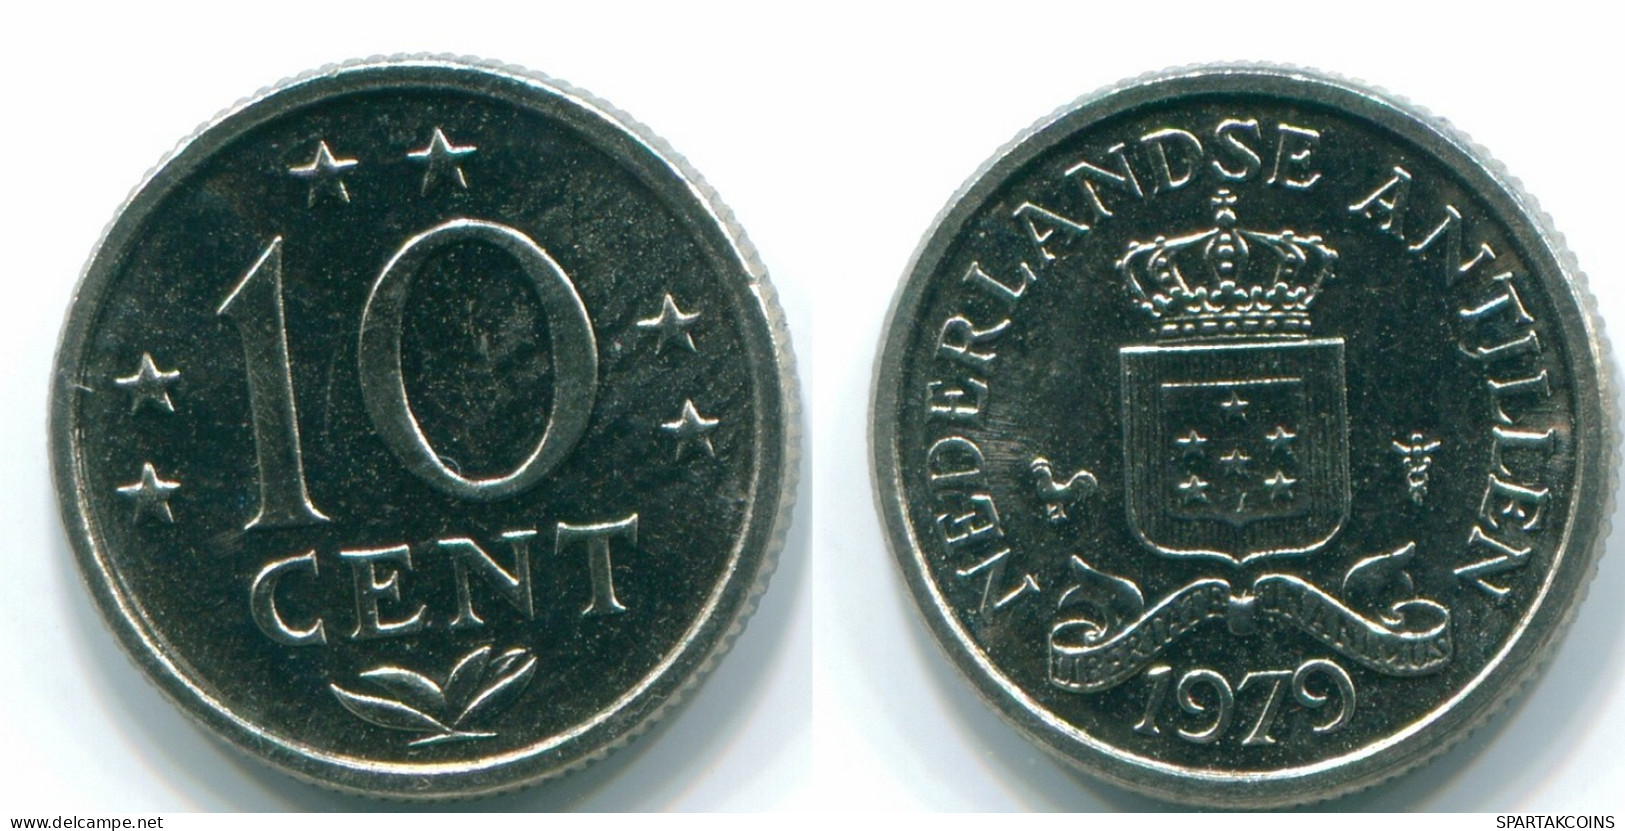 10 CENTS 1979 NIEDERLÄNDISCHE ANTILLEN Nickel Koloniale Münze #S13597.D.A - Antillas Neerlandesas